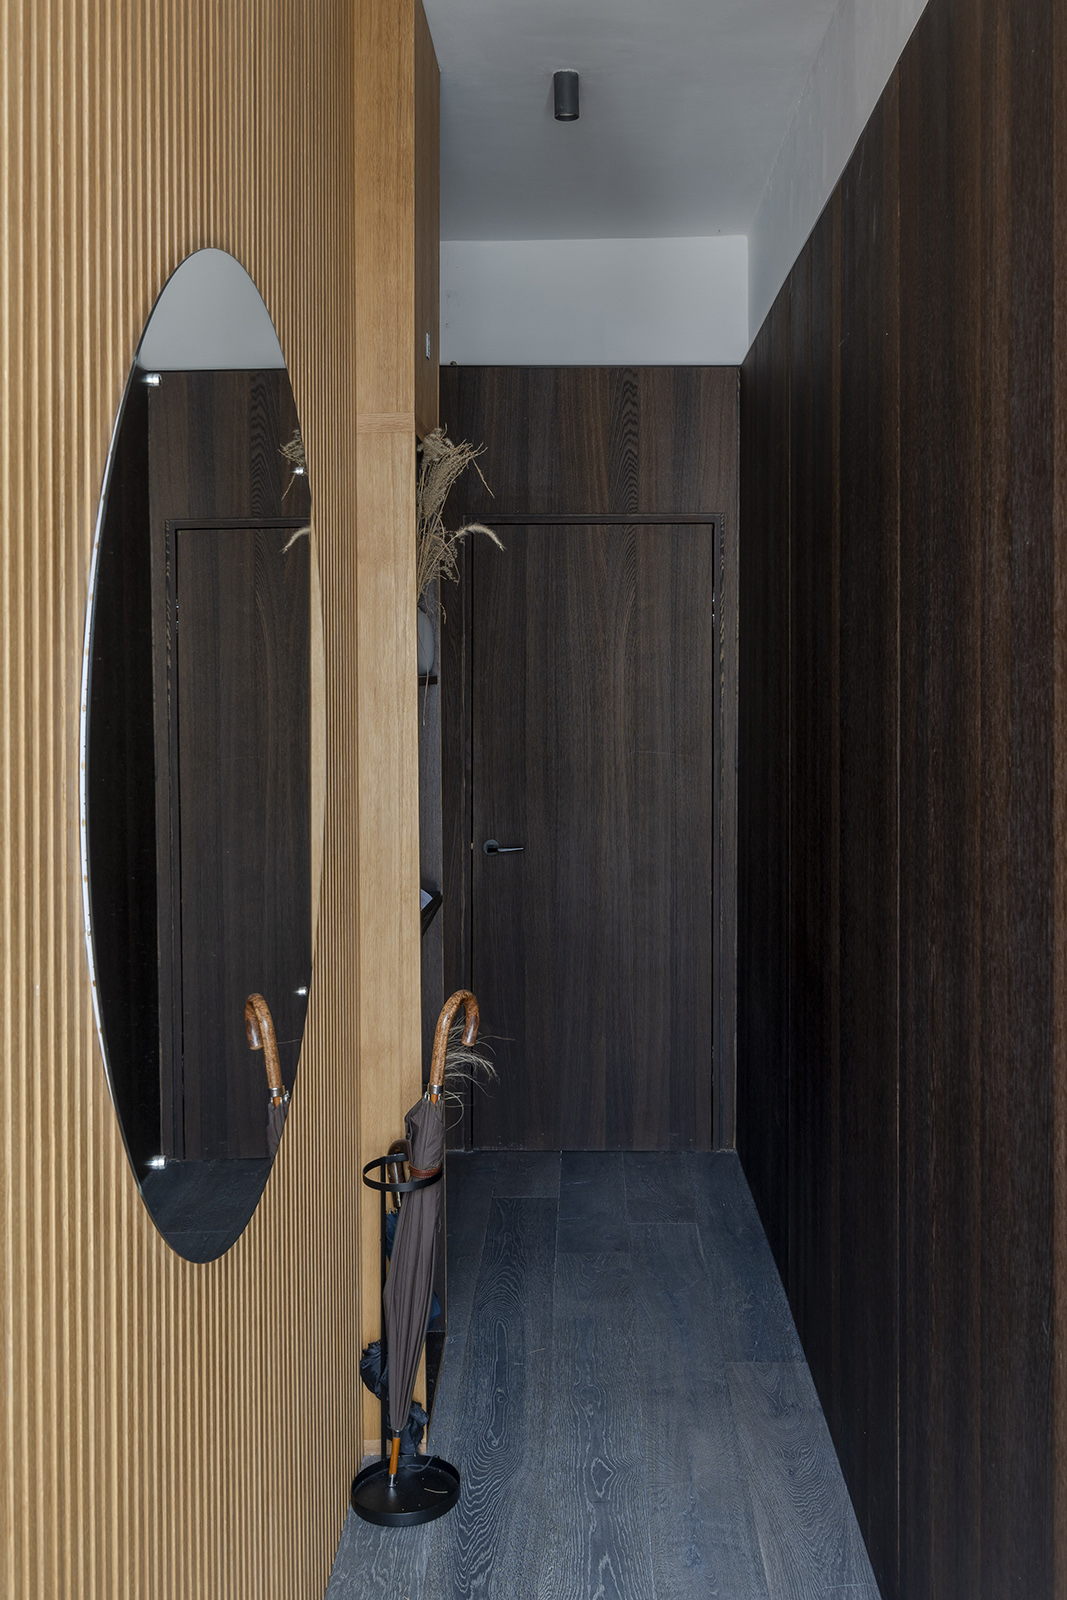 entrée mur tasseaux de bois décoration contemporaine